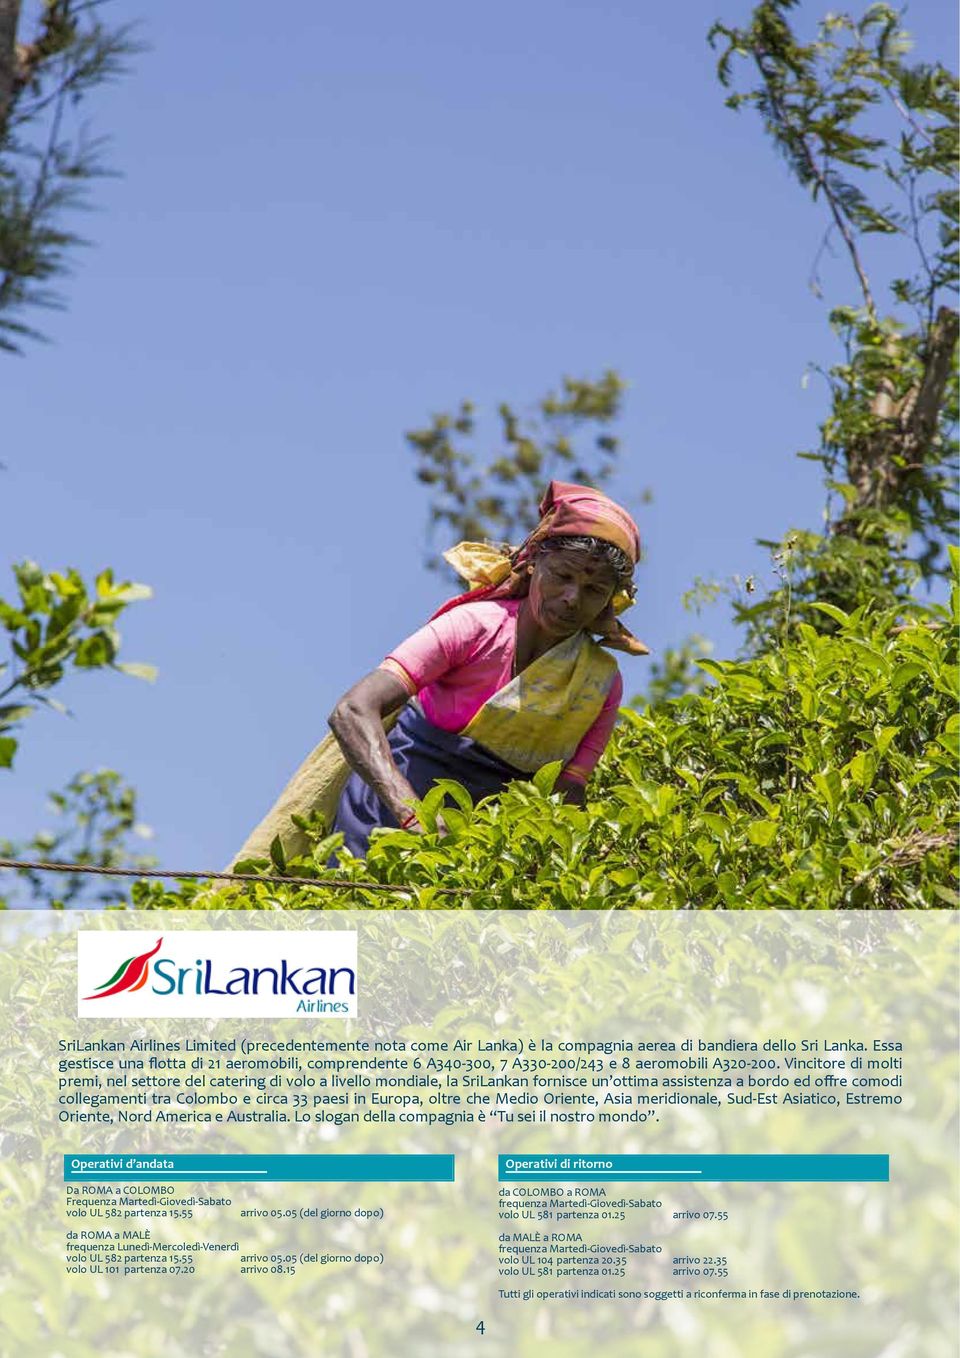 Vincitore di molti premi, nel settore del catering di volo a livello mondiale, la SriLankan fornisce un ottima assistenza a bordo ed offre comodi collegamenti tra Colombo e circa 33 paesi in Europa,